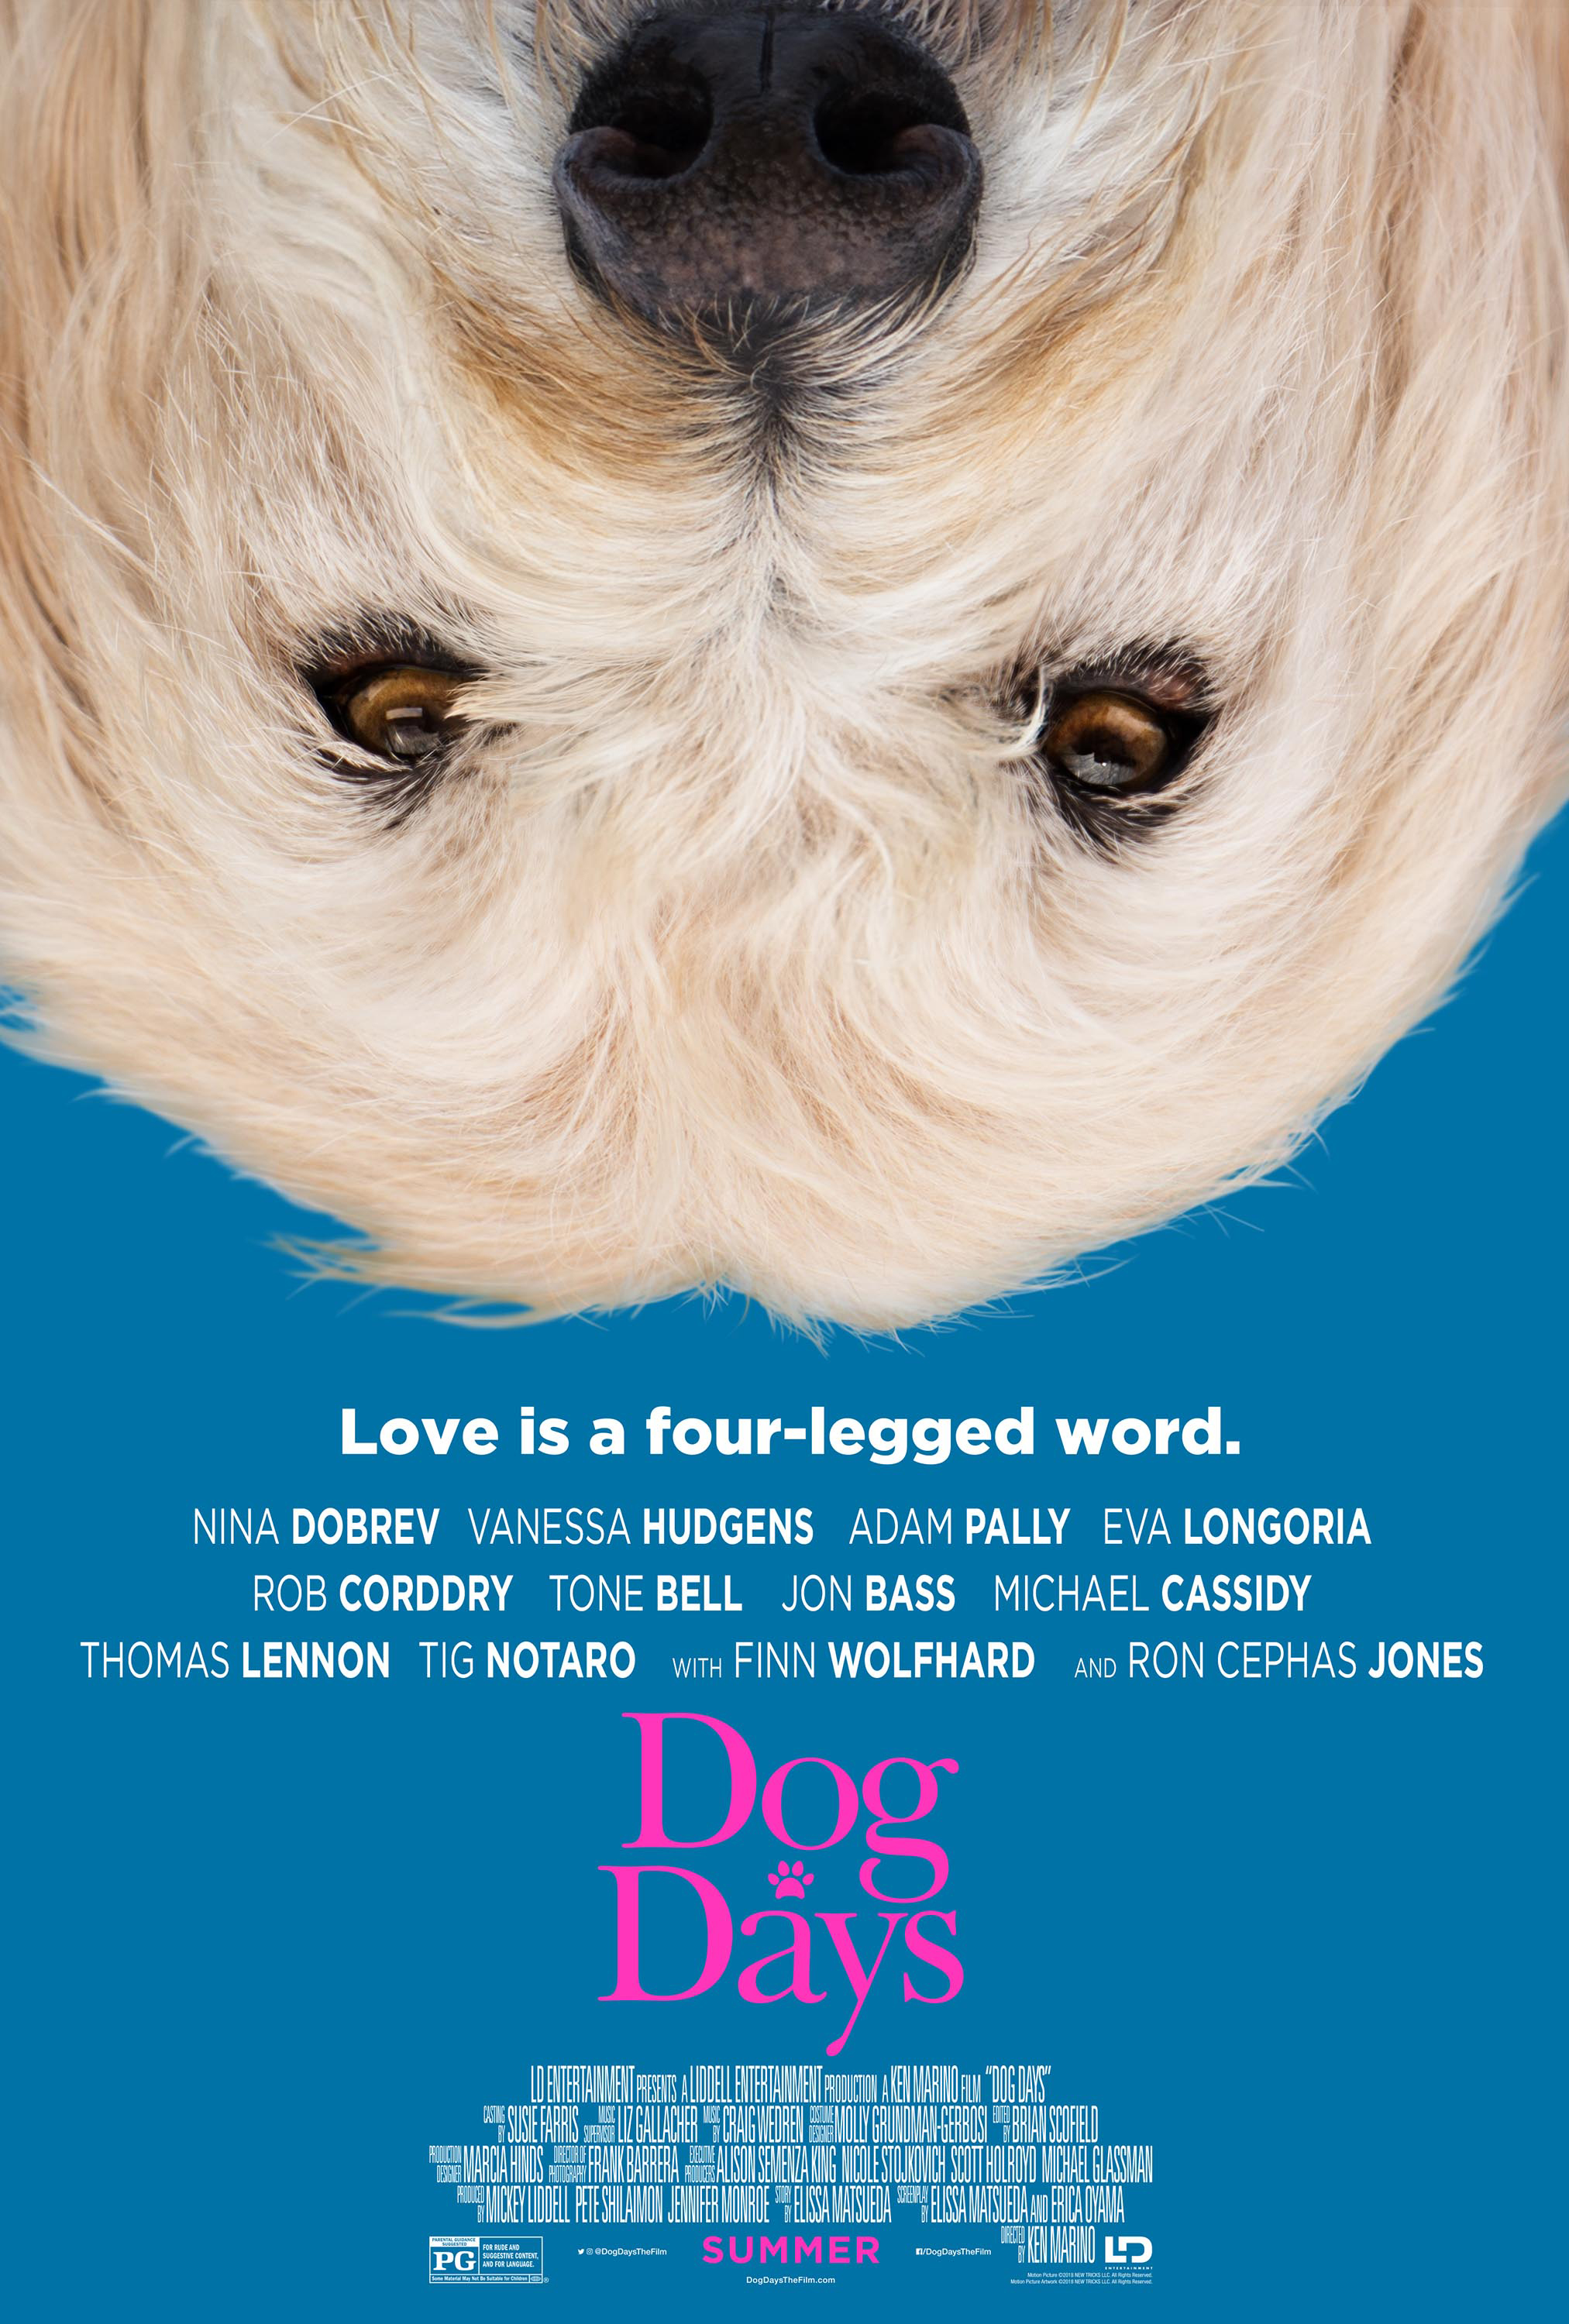 Dog Days poster #dogDays